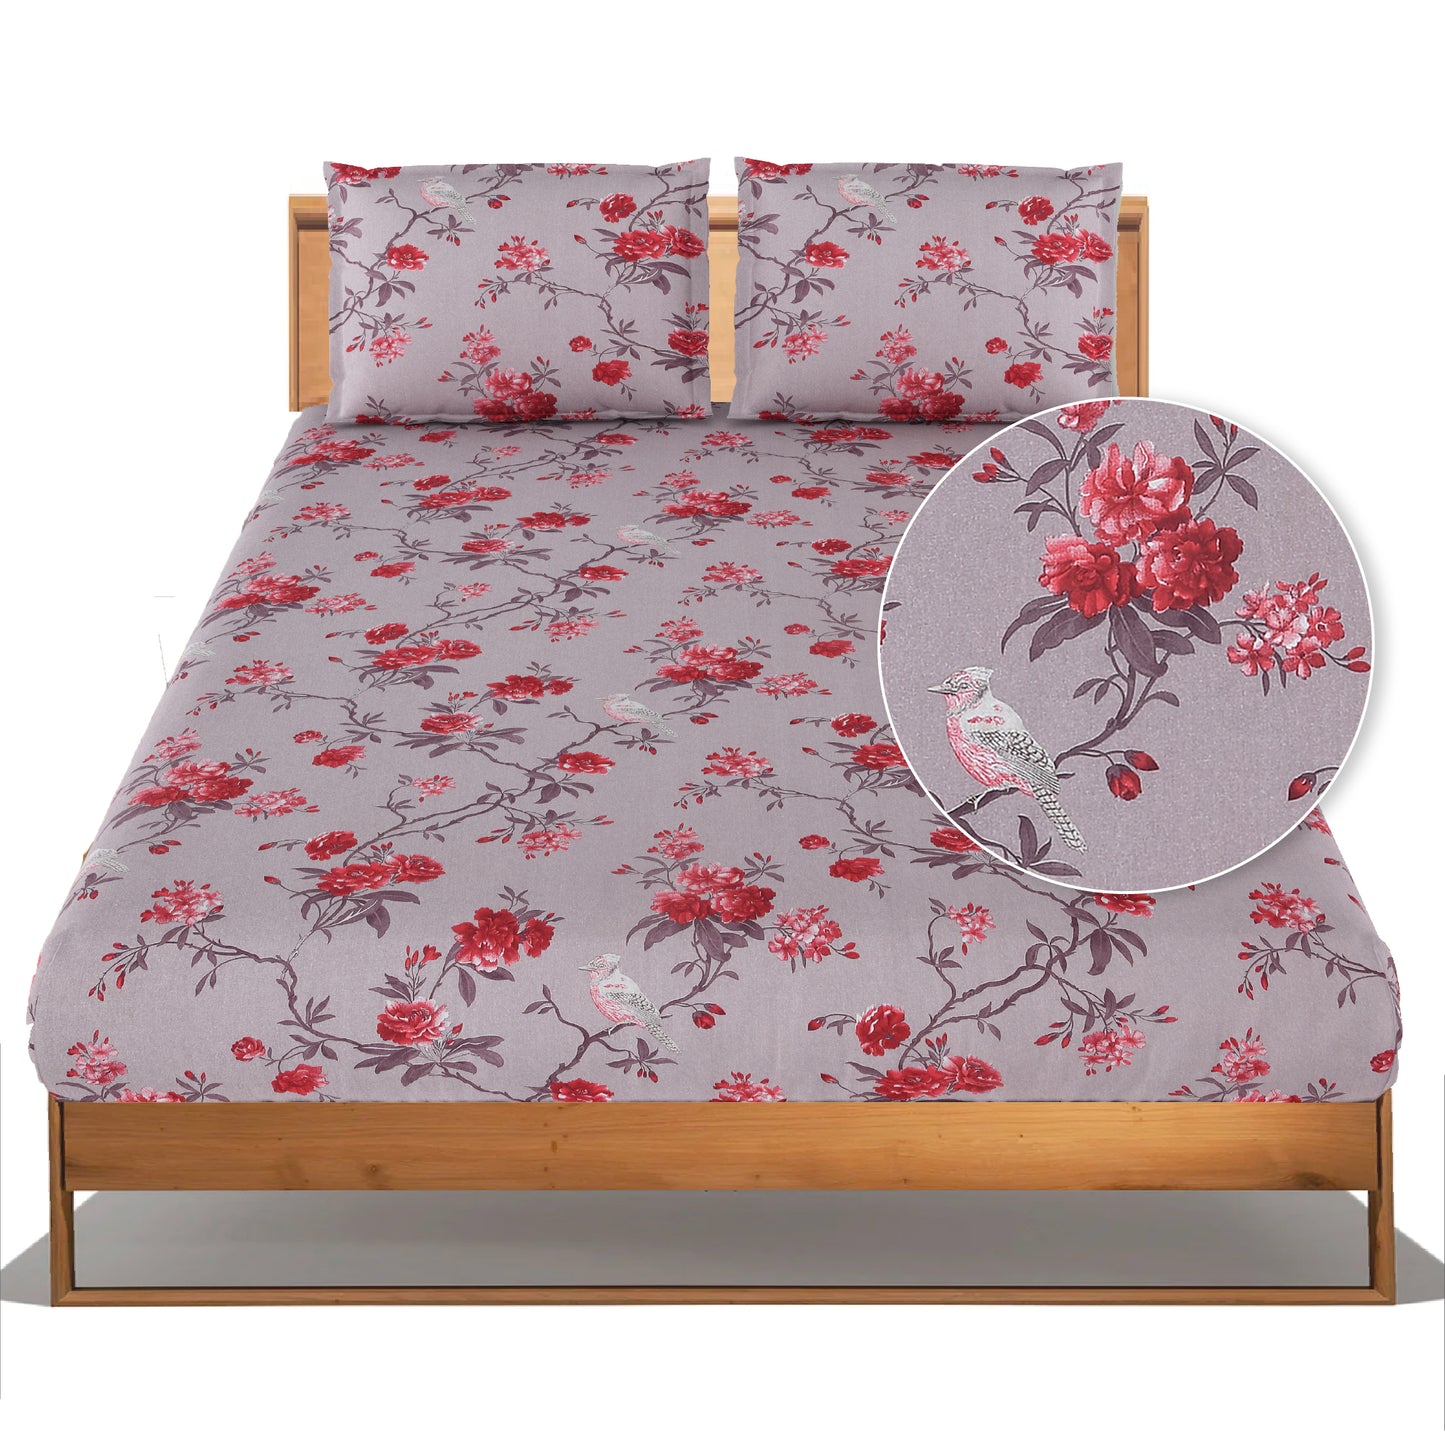 Sparrowbiscus Lavender & Red King Bedsheet